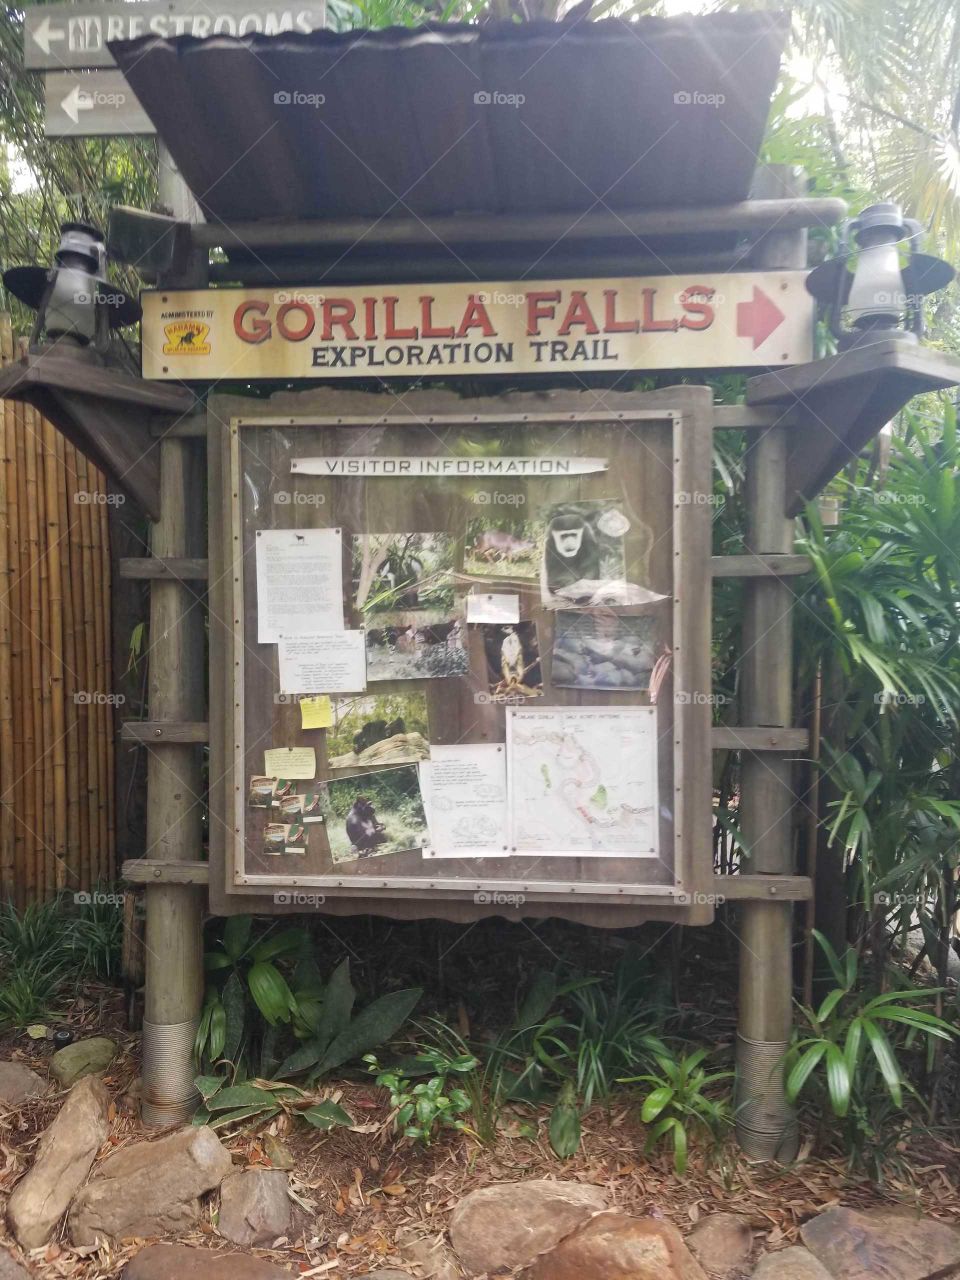 Mundo dos gorilas